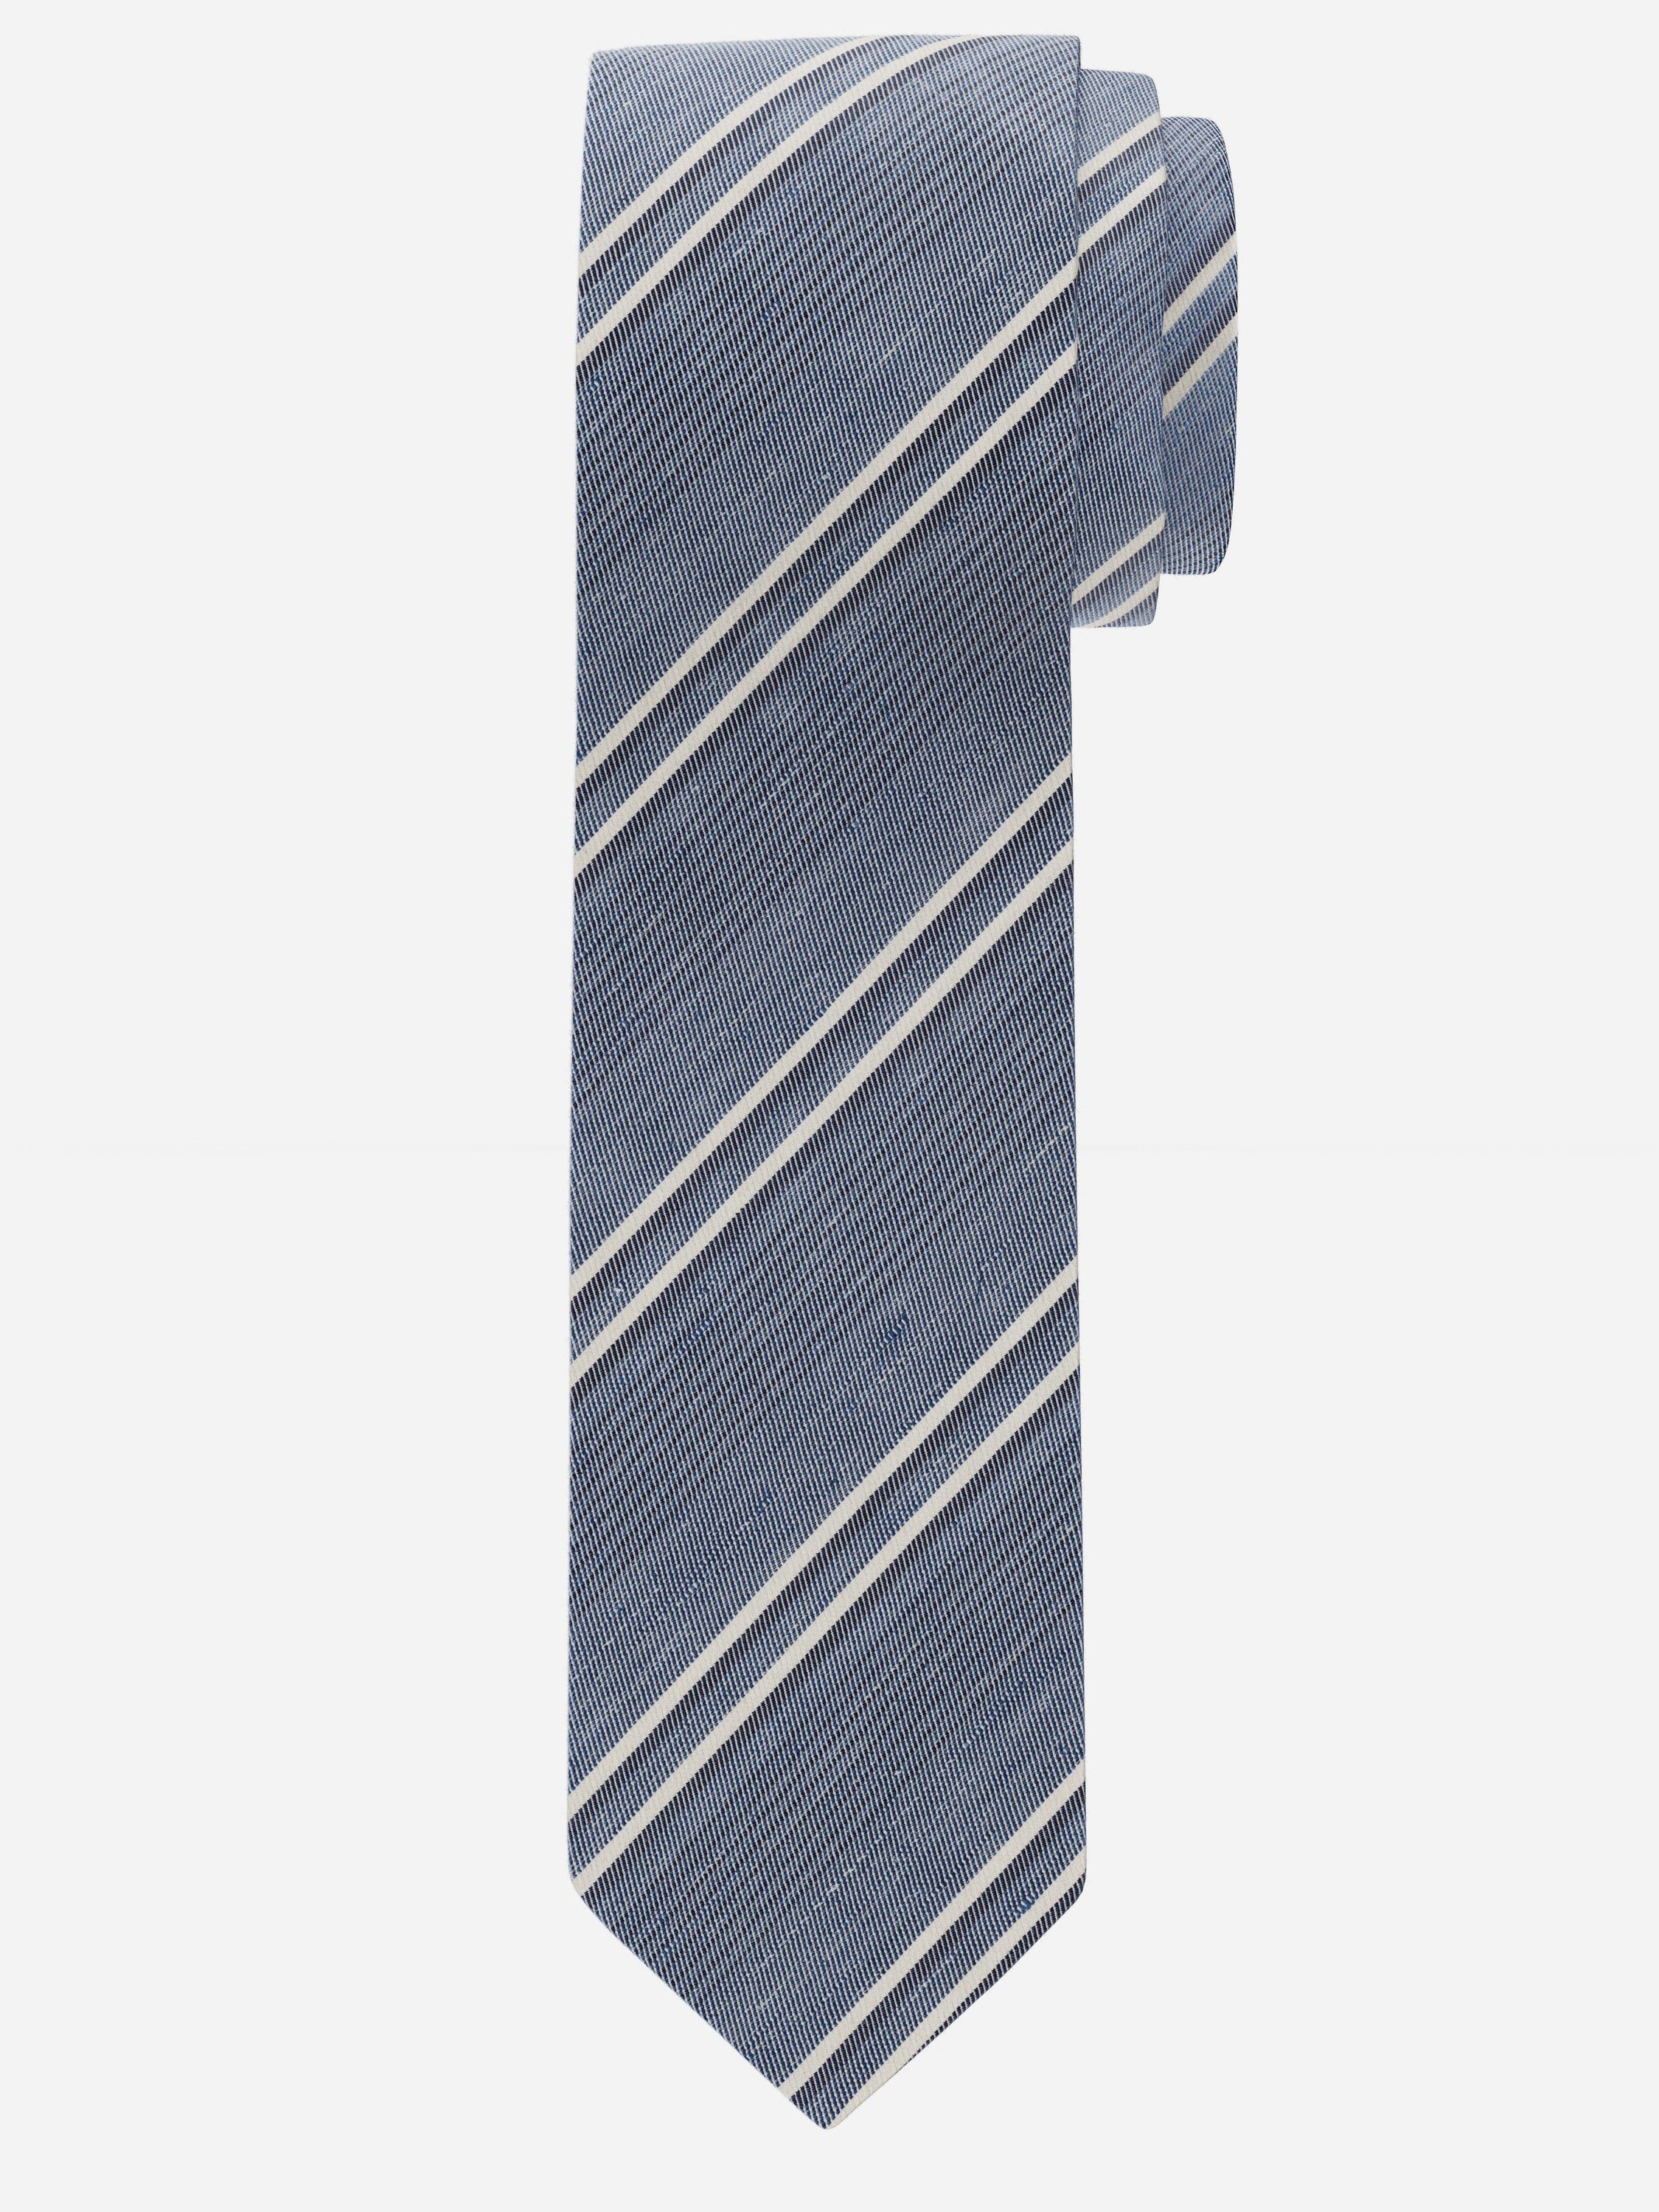 OLYMP 15 blau Krawatte